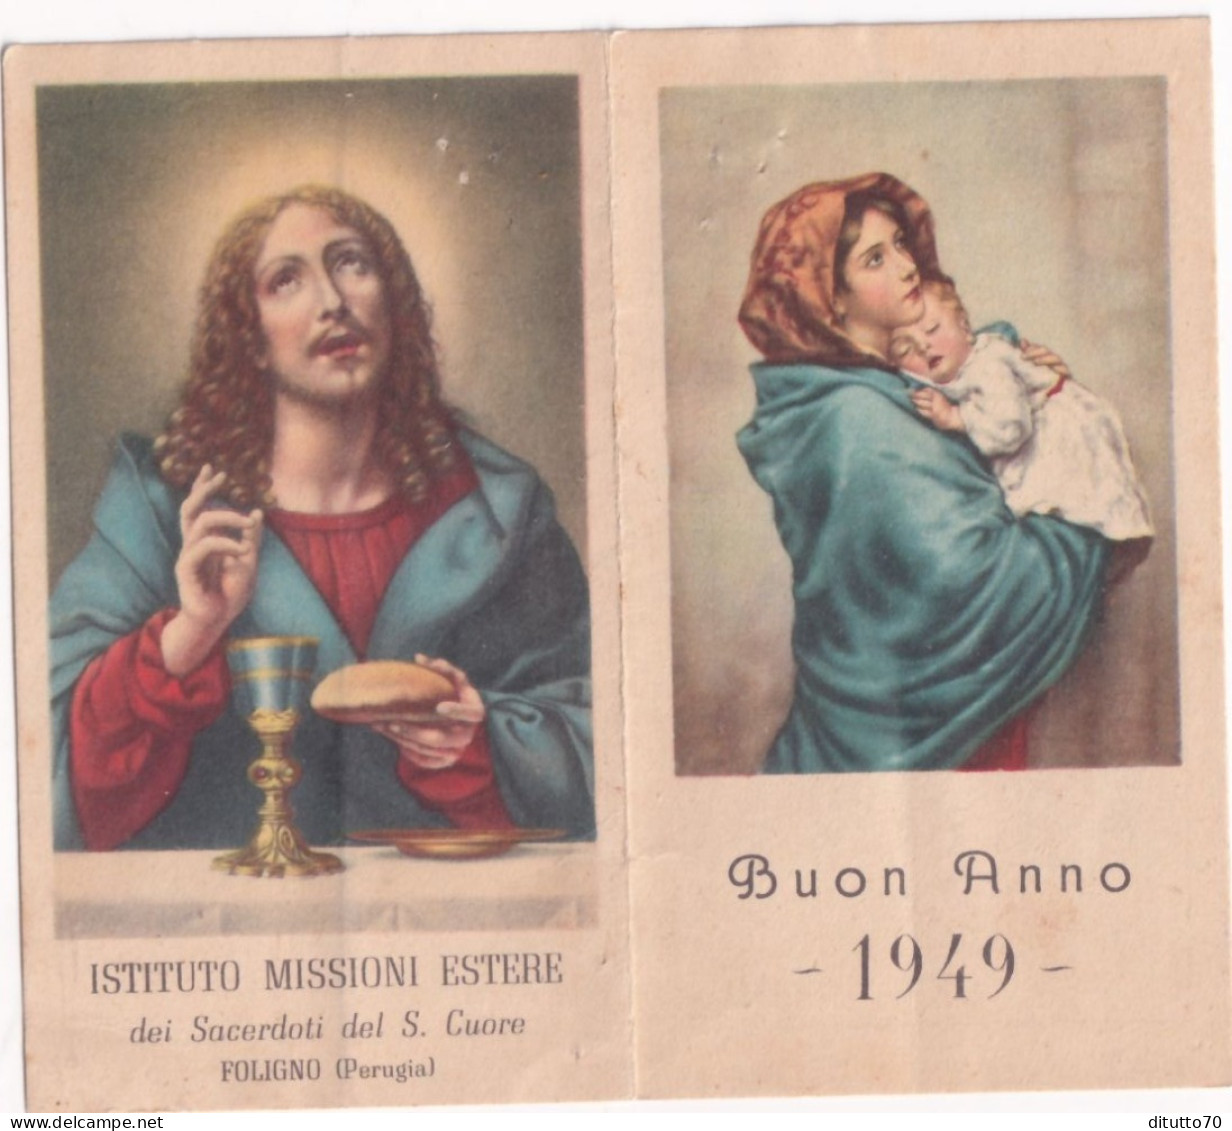 Calendarietto - Istituto Missioni Estere - Dei Sacerdoti Del S.cuore - Foligno - Perugia - Anno 1949 - Small : 1941-60